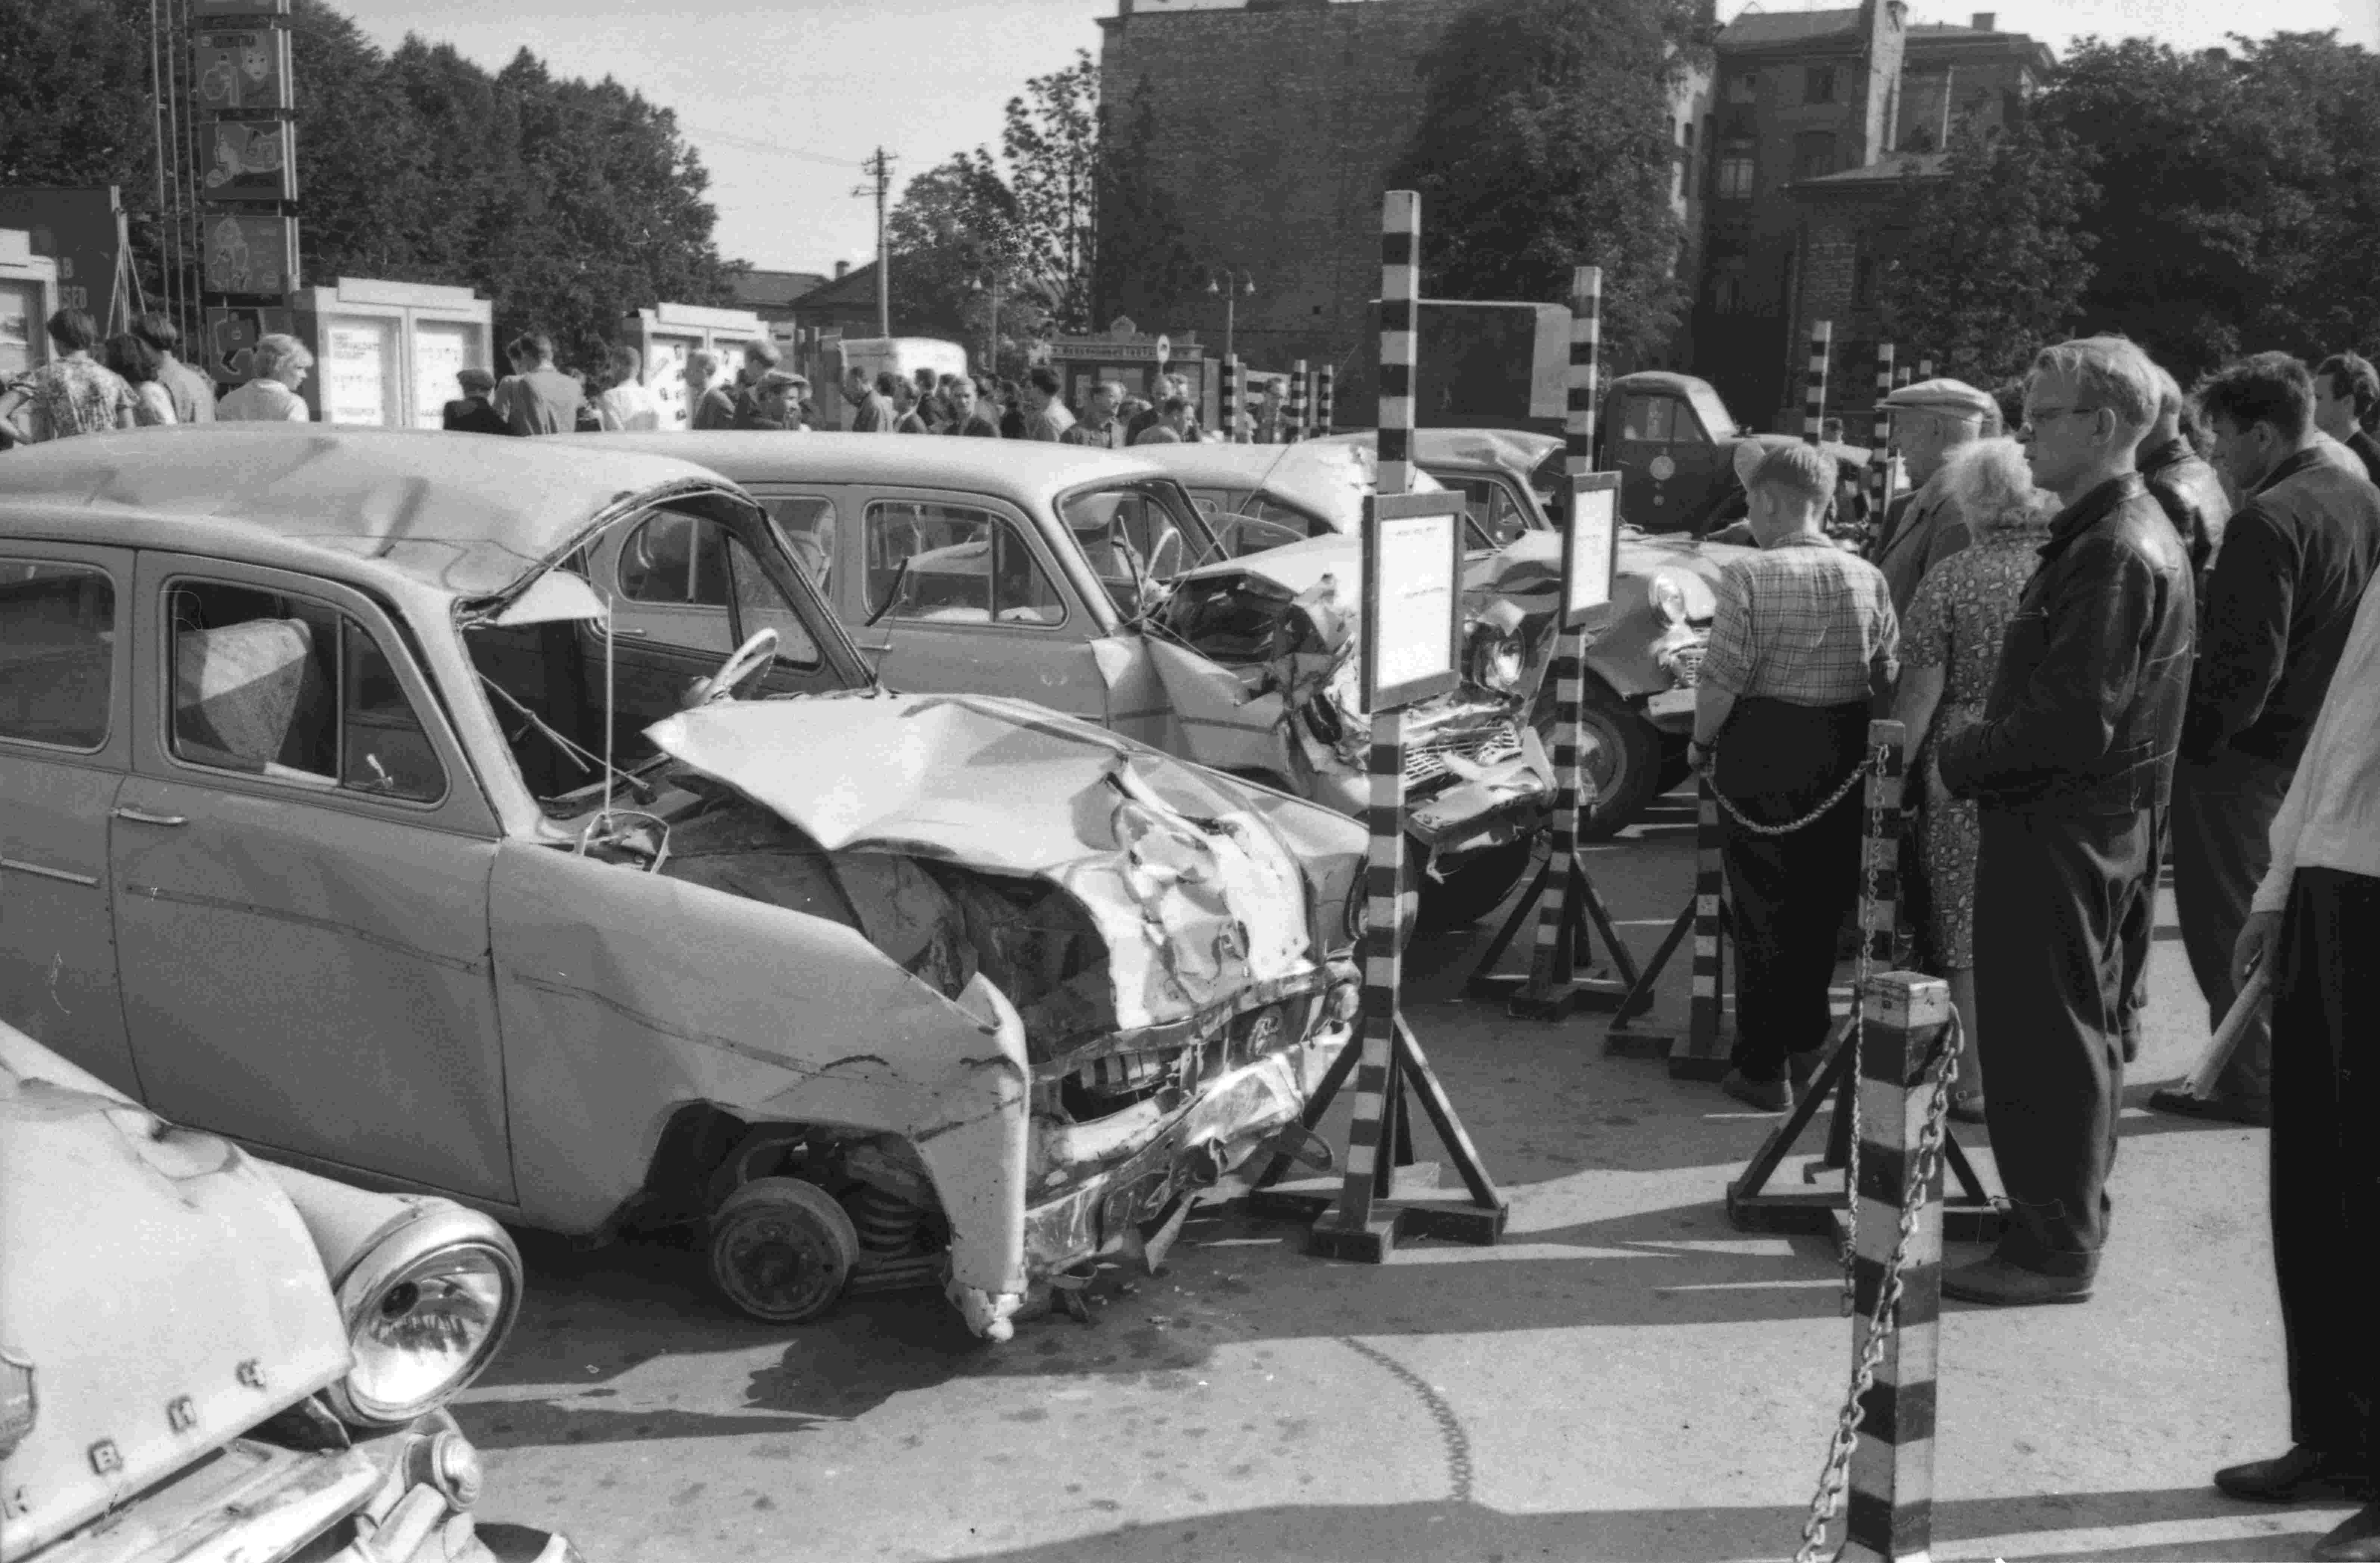 Esimene sõjajärgne liiklusnädal peeti Eestis 1958. aastal. Fotol hetk avariiliste autode näituselt Tallinnas 1963. aastal (Foto: Rahvusarhiivi Filmiarhiiv).